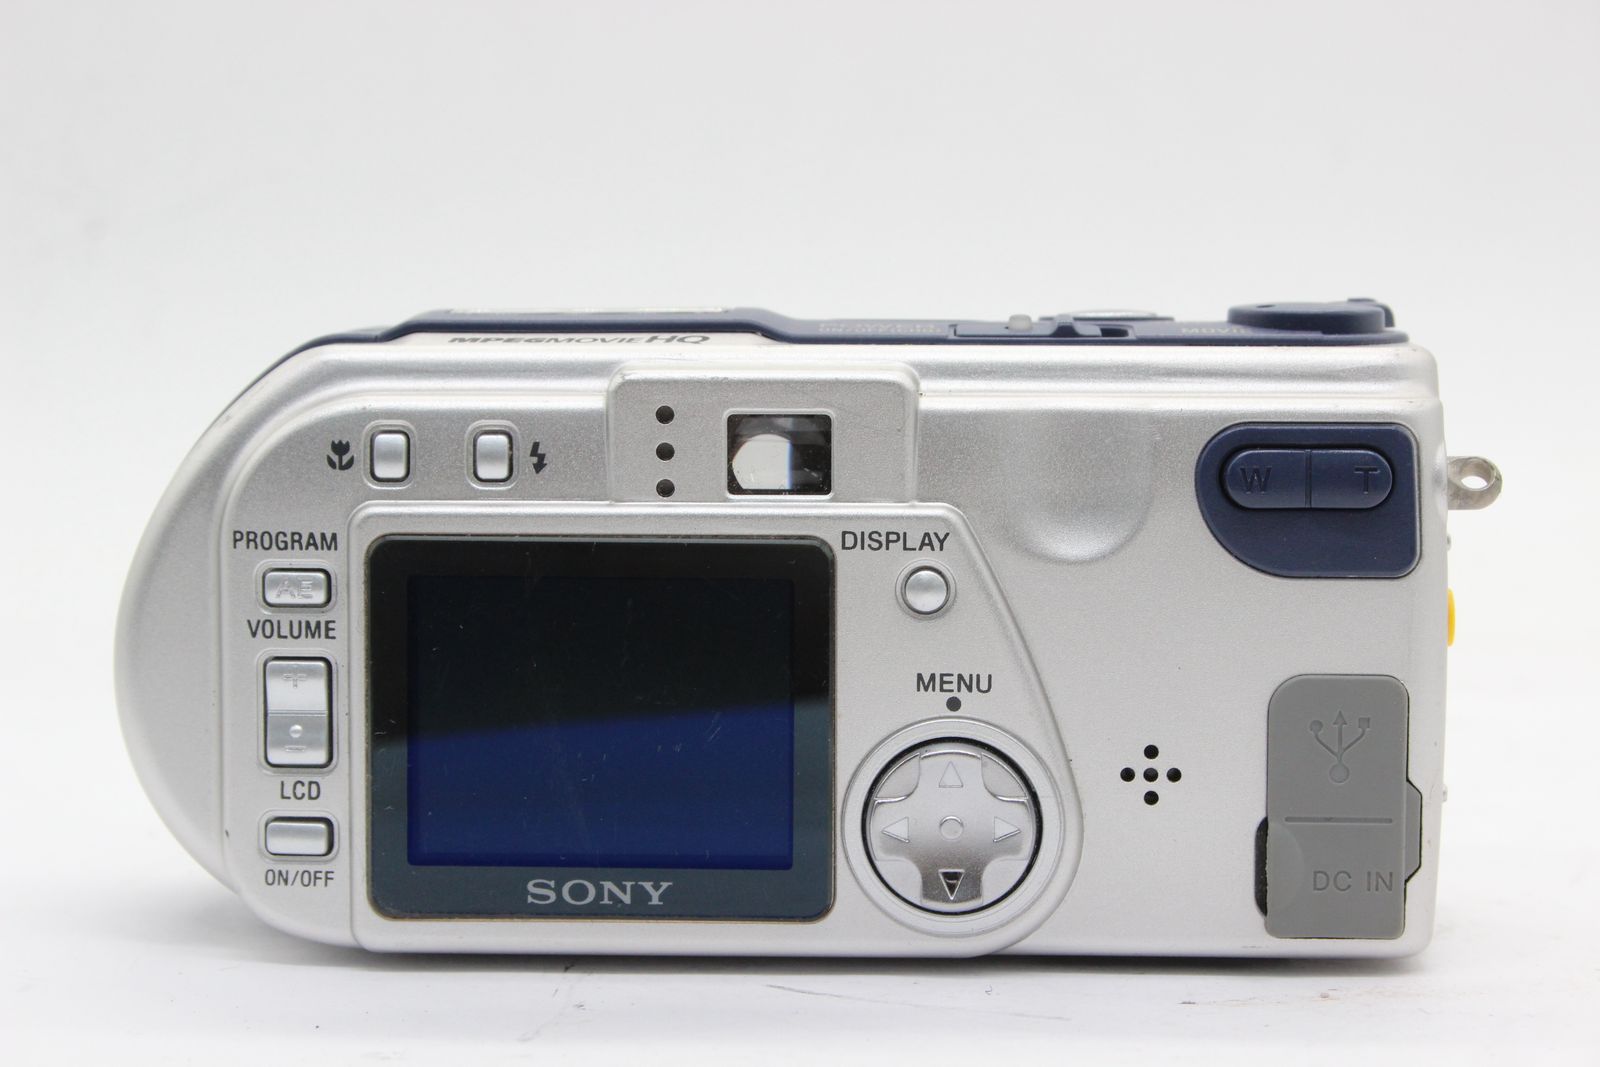 返品保証】 【録画再生確認済み】ソニー Sony Cyber-shot DSC-P1 3x